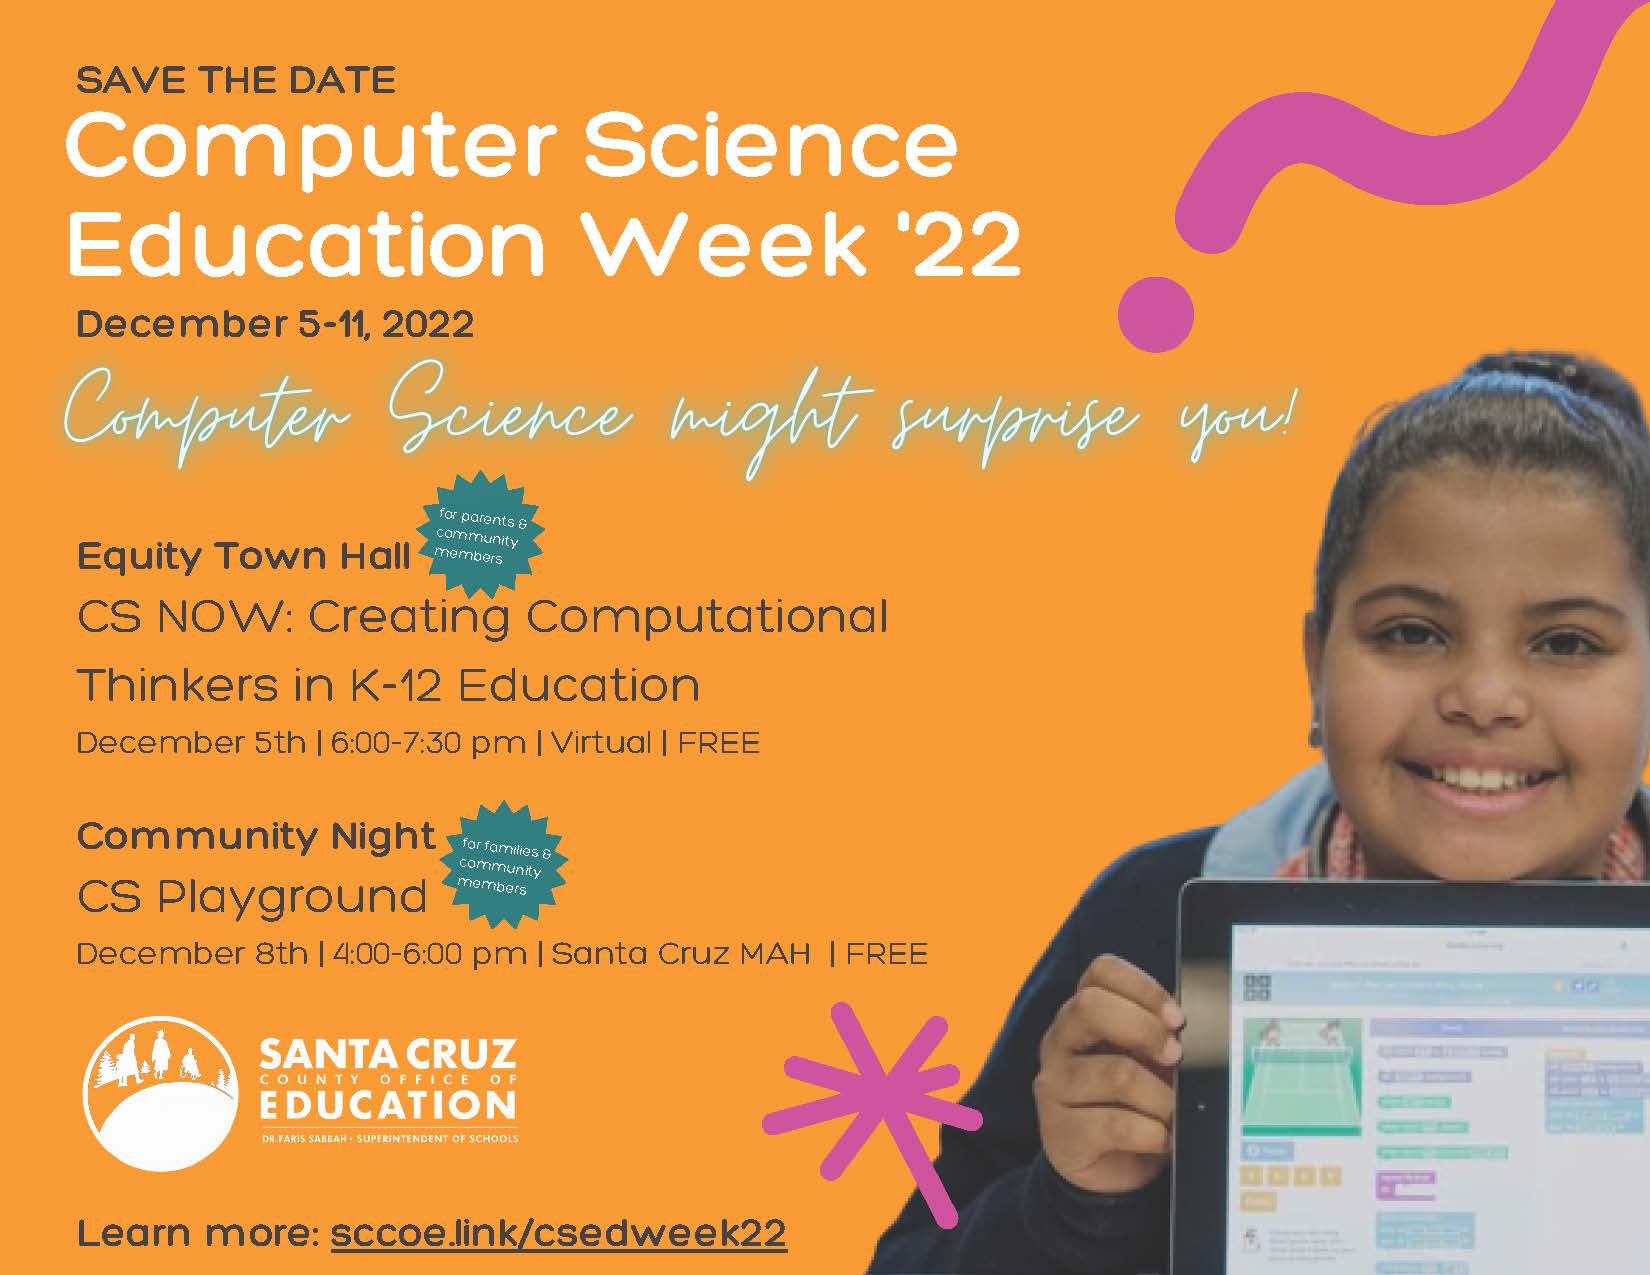 Computer Science Ed Week